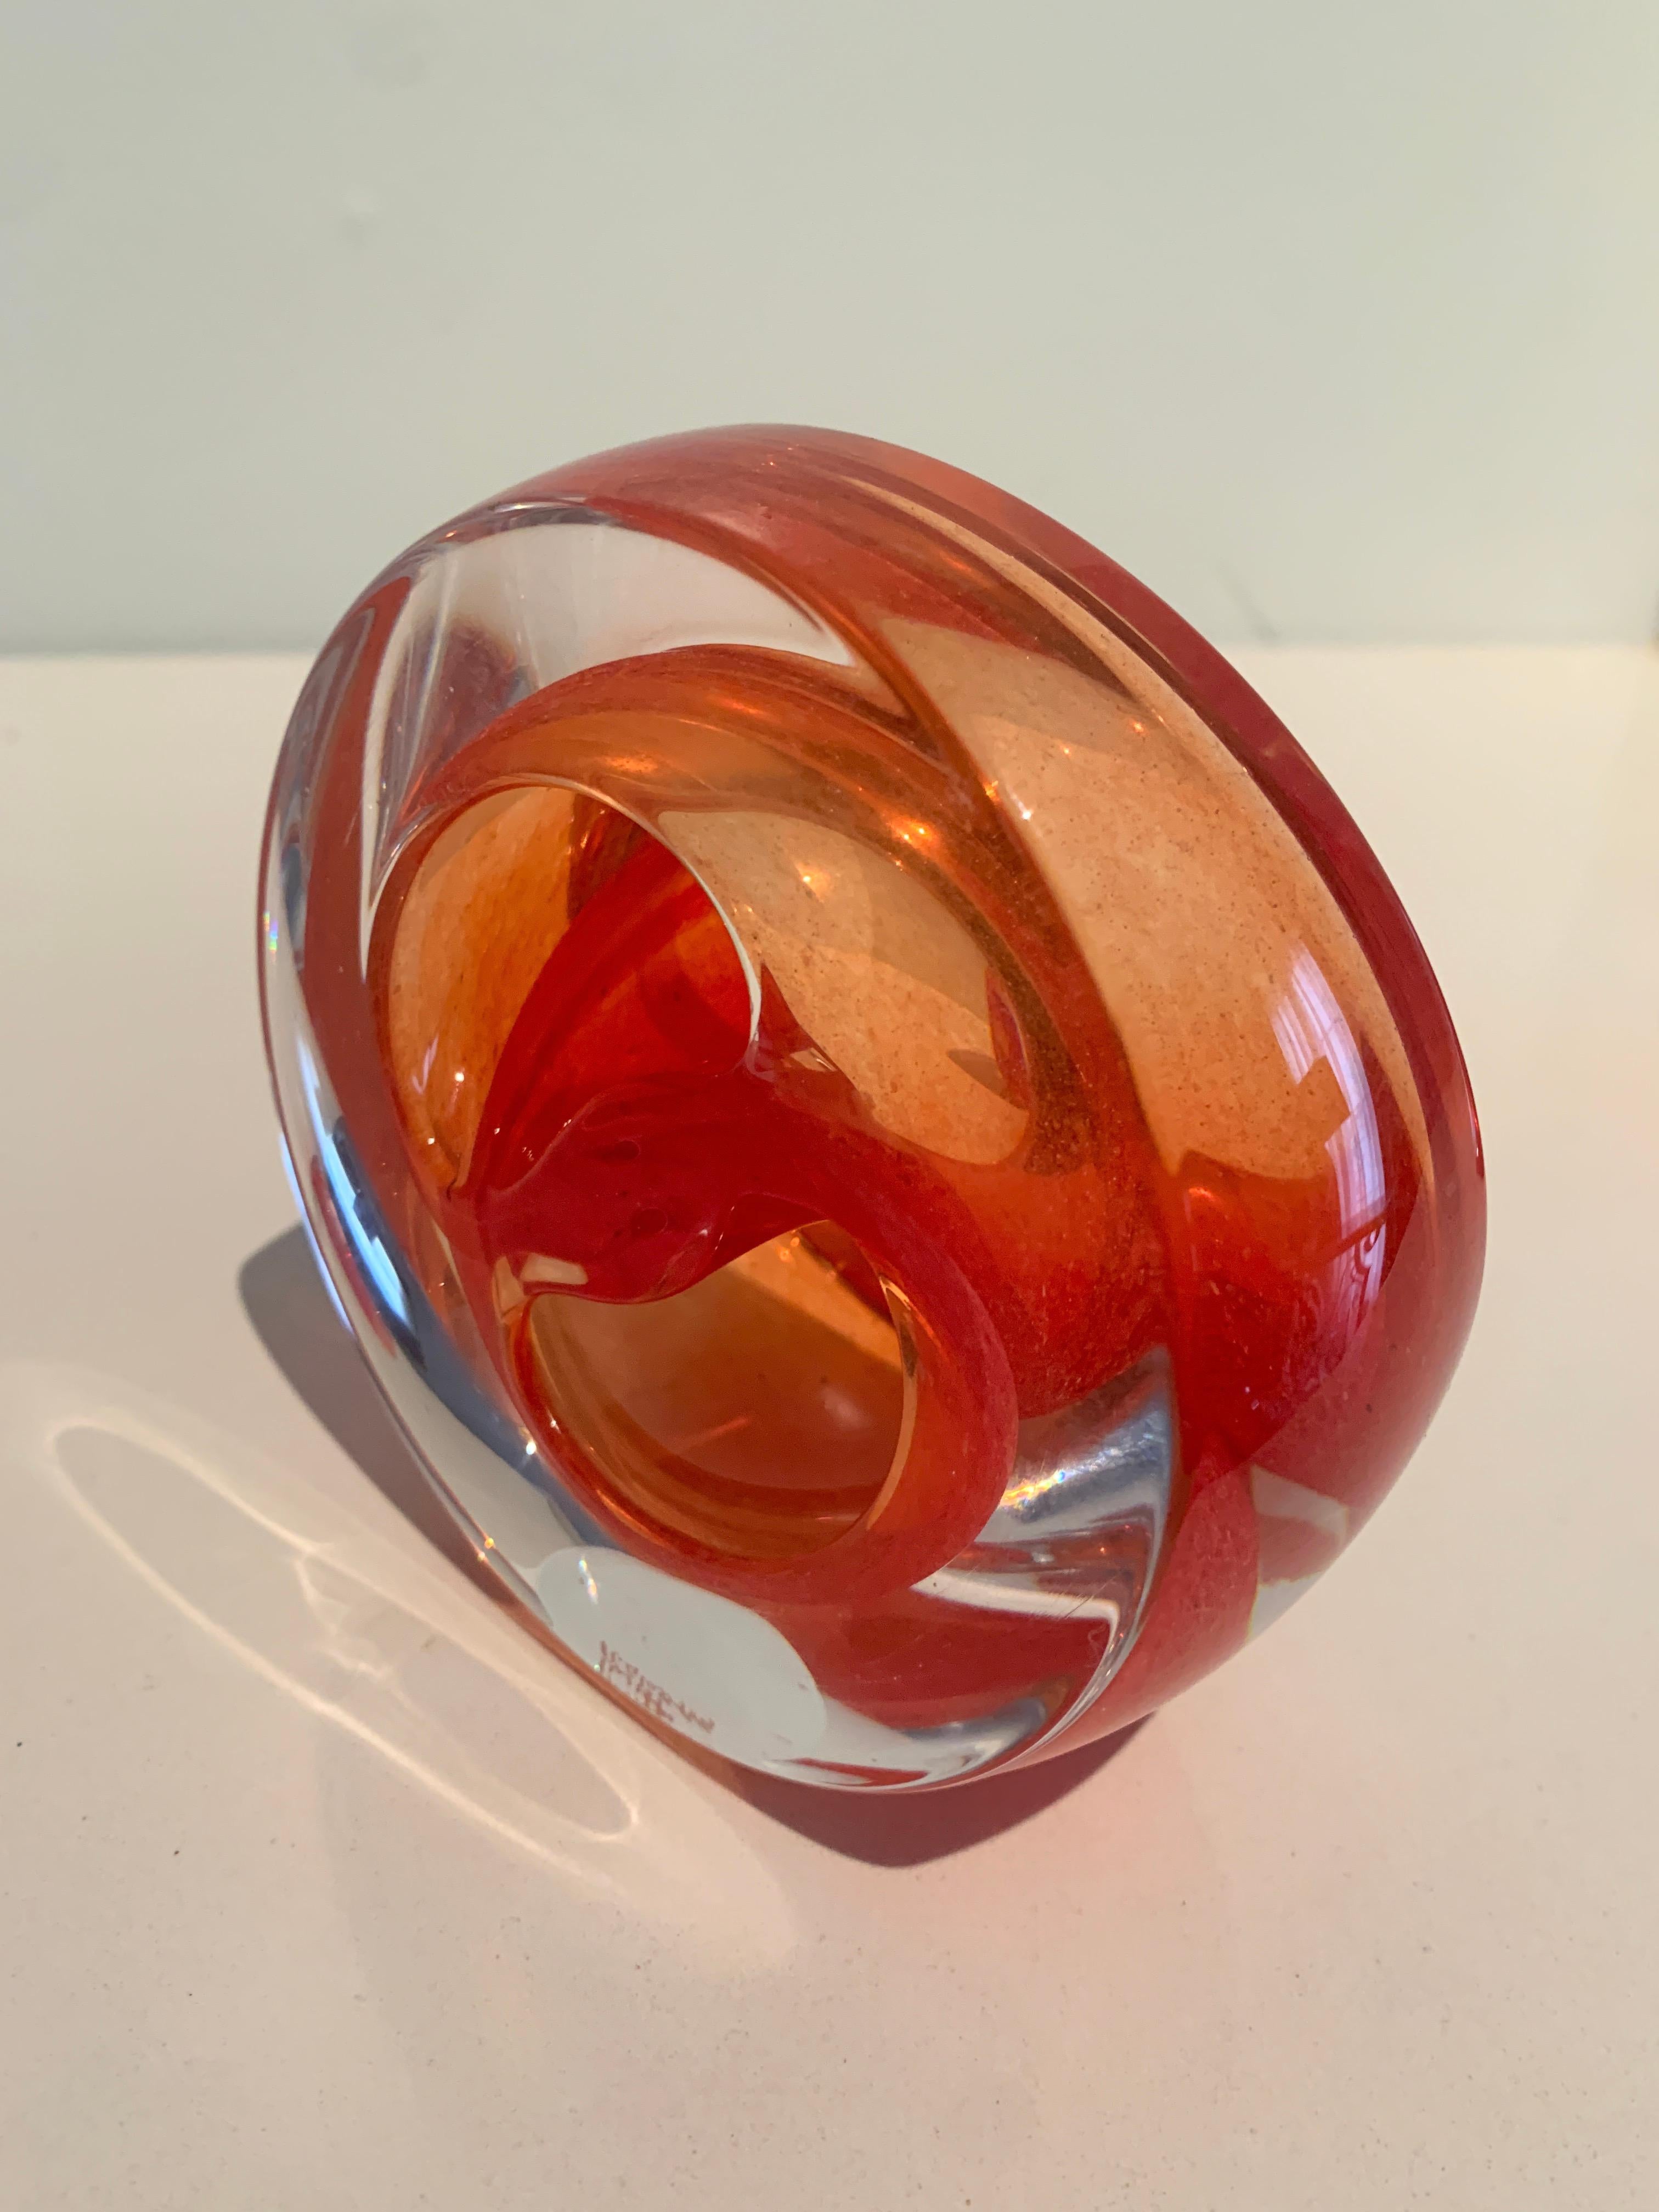 Une merveilleuse sculpture en verre soufflé à la main de Teign Valley Glass en Angleterre. L'atelier existe depuis le début du 20e siècle et est réputé pour son travail du verre... cette pièce est une magnifique pièce ronde abstraite. Nous avons un